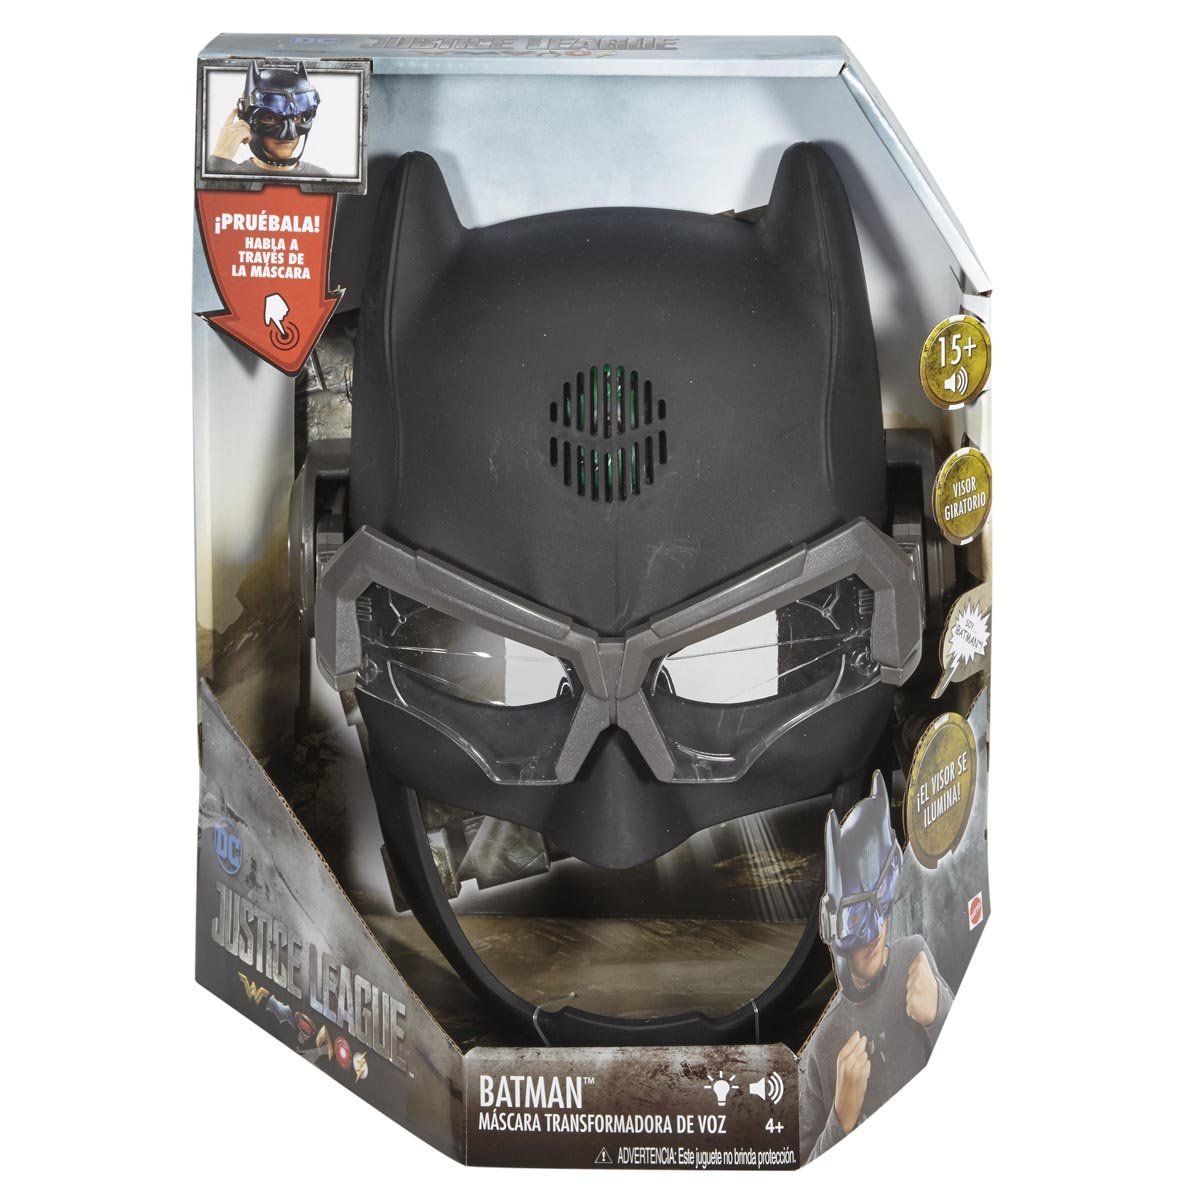 Dc Comics Justice League - Batman Mascara Transformadora de Voz